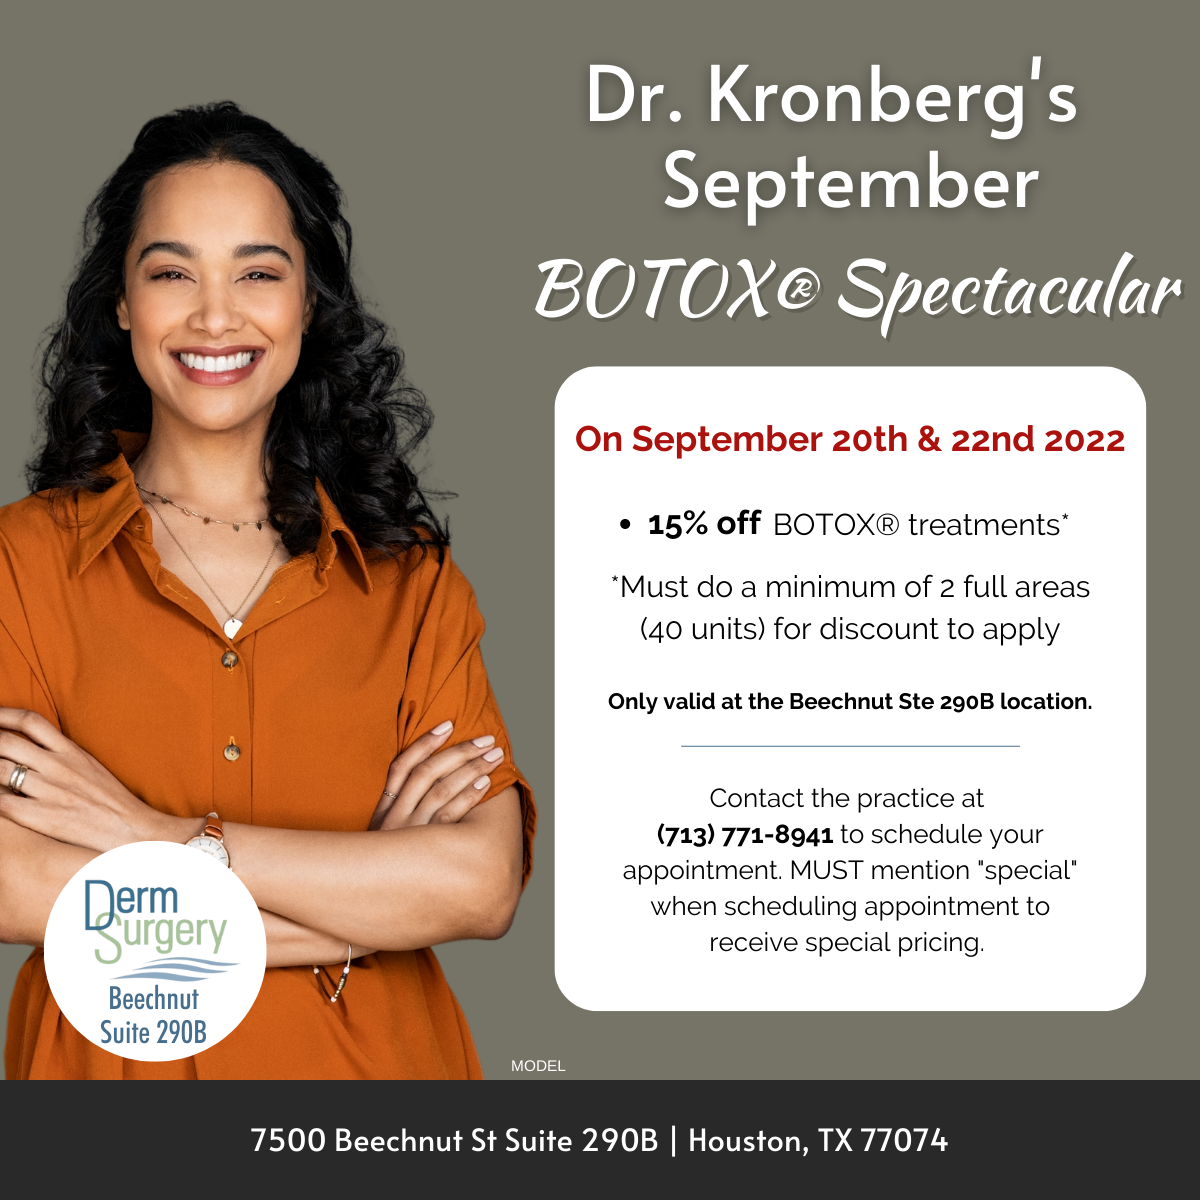 Dr. Kronberg's September BOTOX® Spectacular